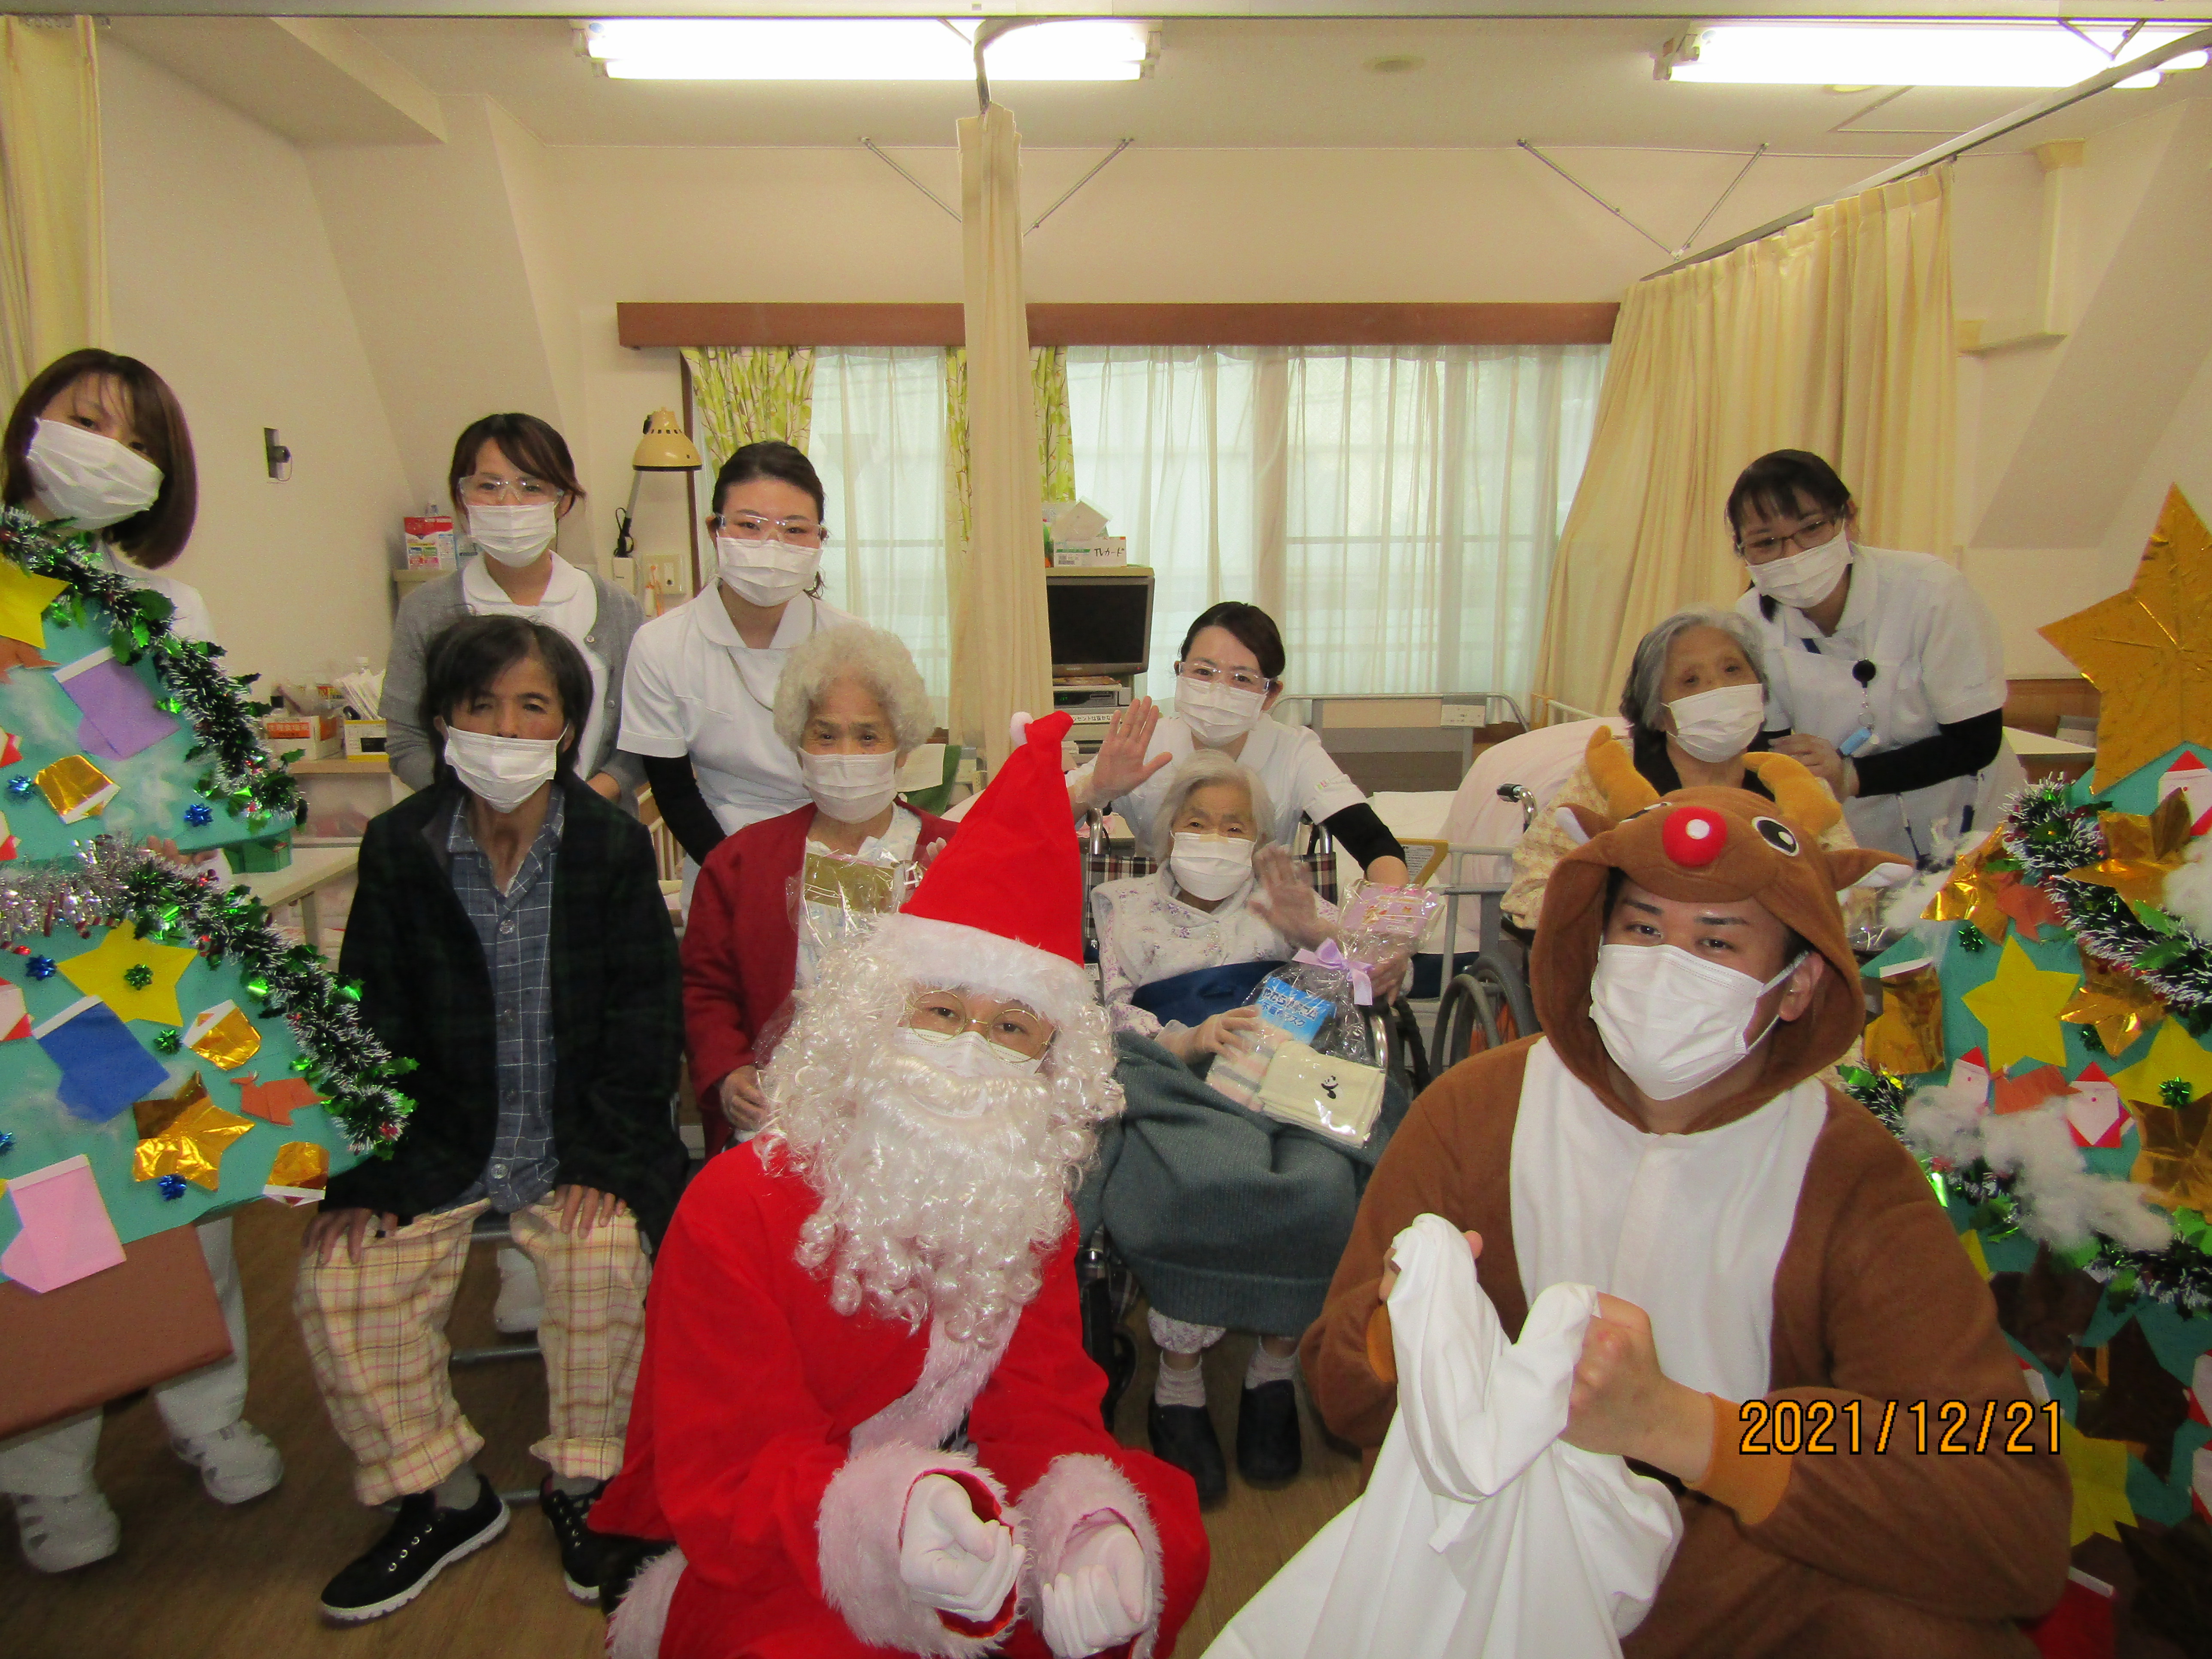 入院患者様とクリスマス会をおこないました。